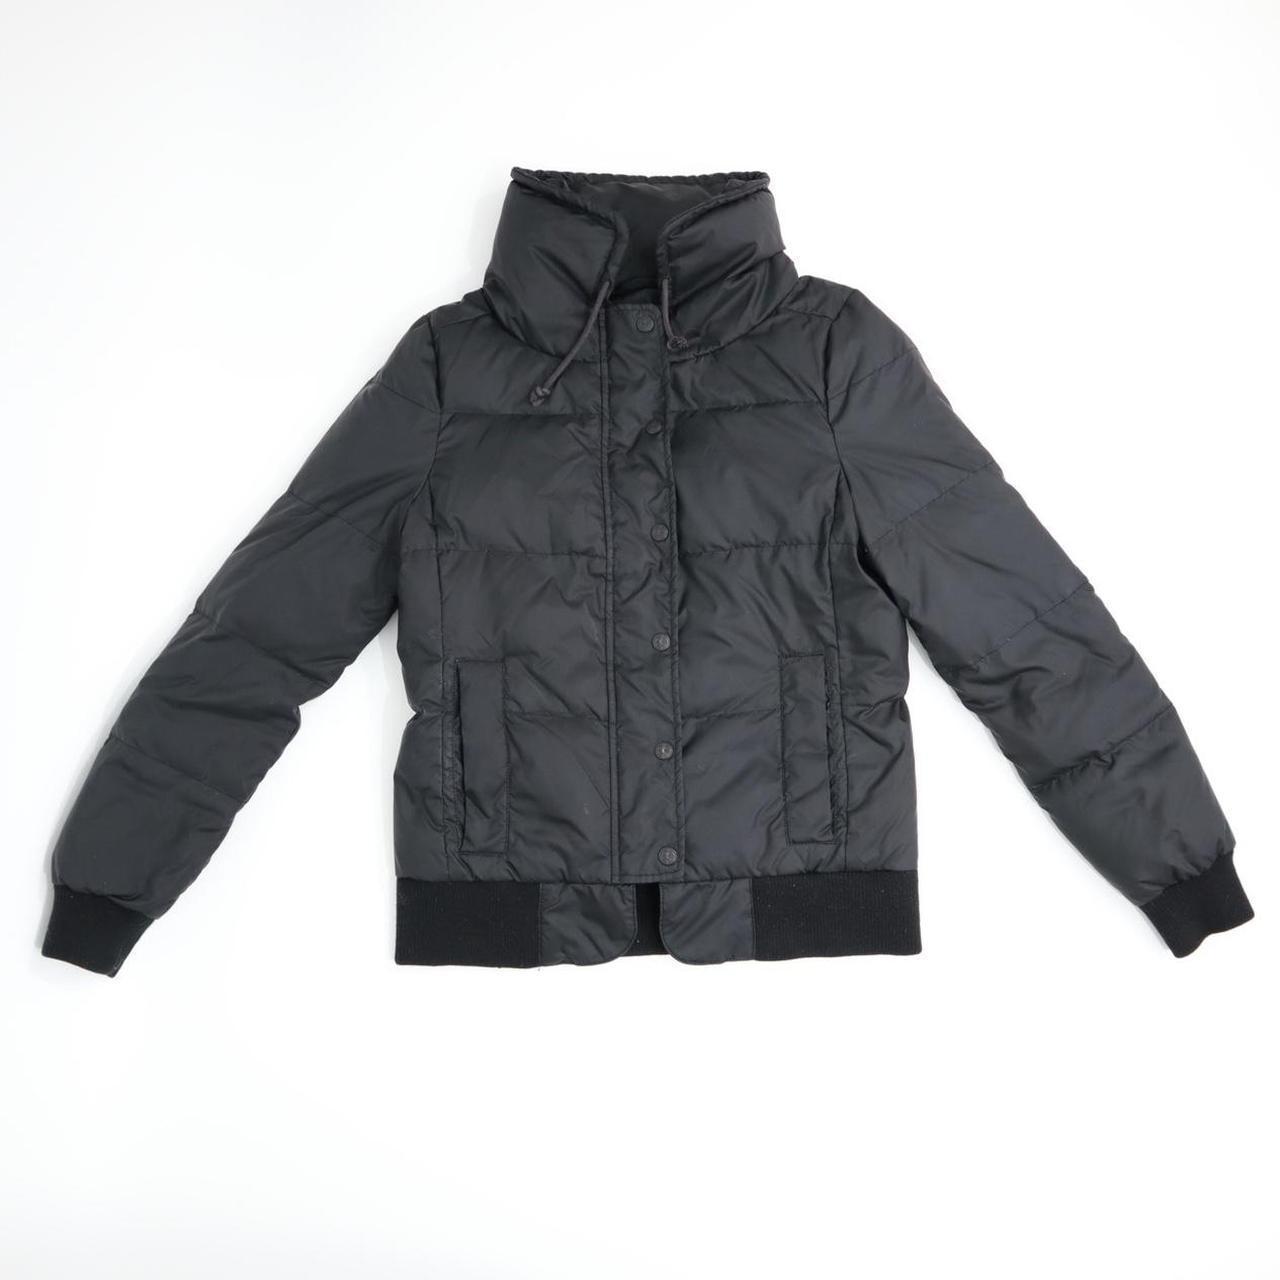 Y2k Juicy couture black puffer jacket Cute black... - Depop